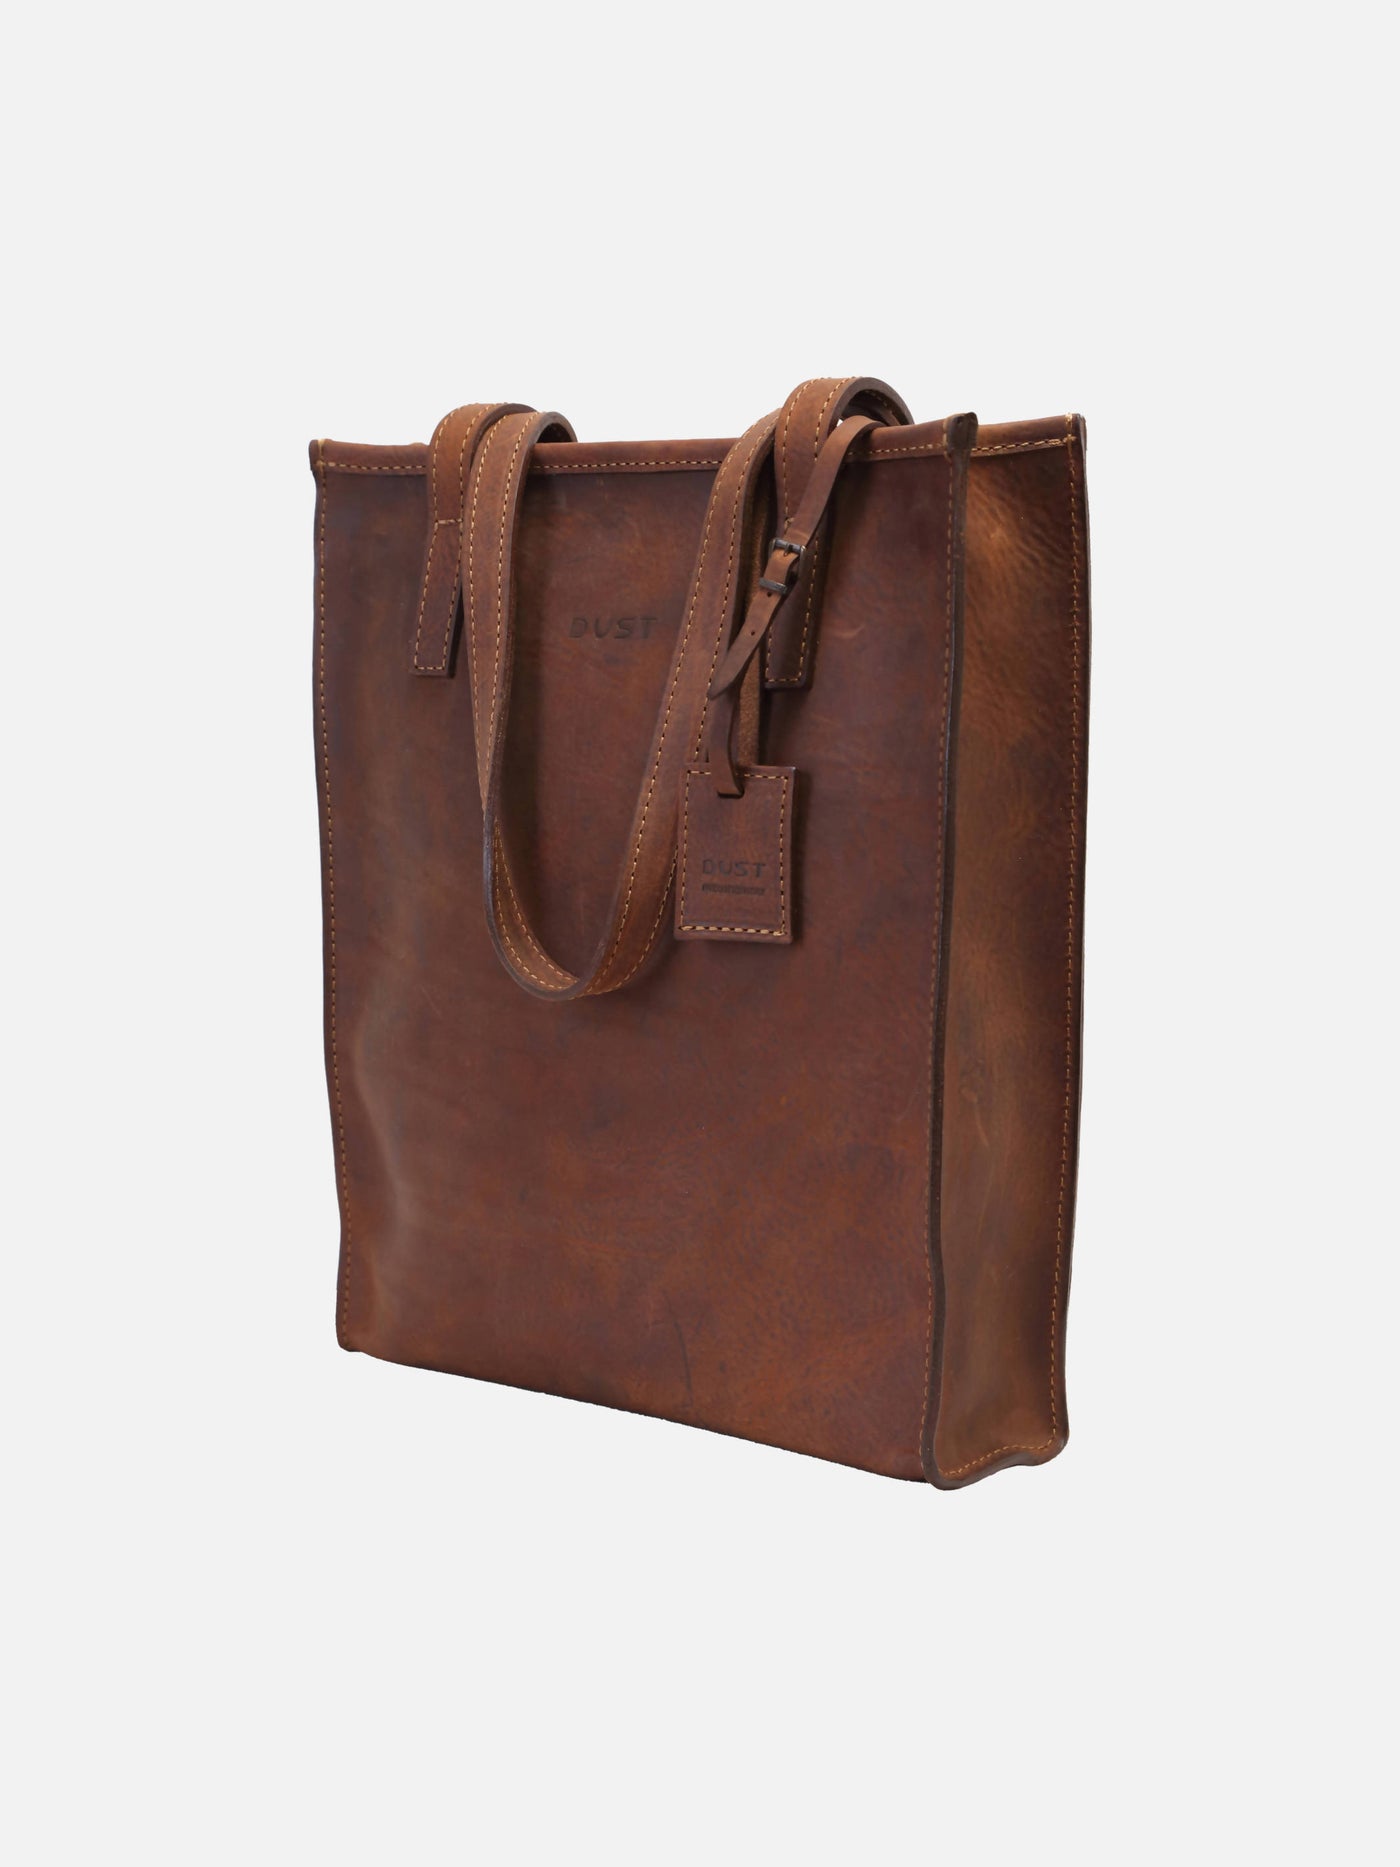 Tote bag en cuir marron vintage - Mod 105 - Image 1